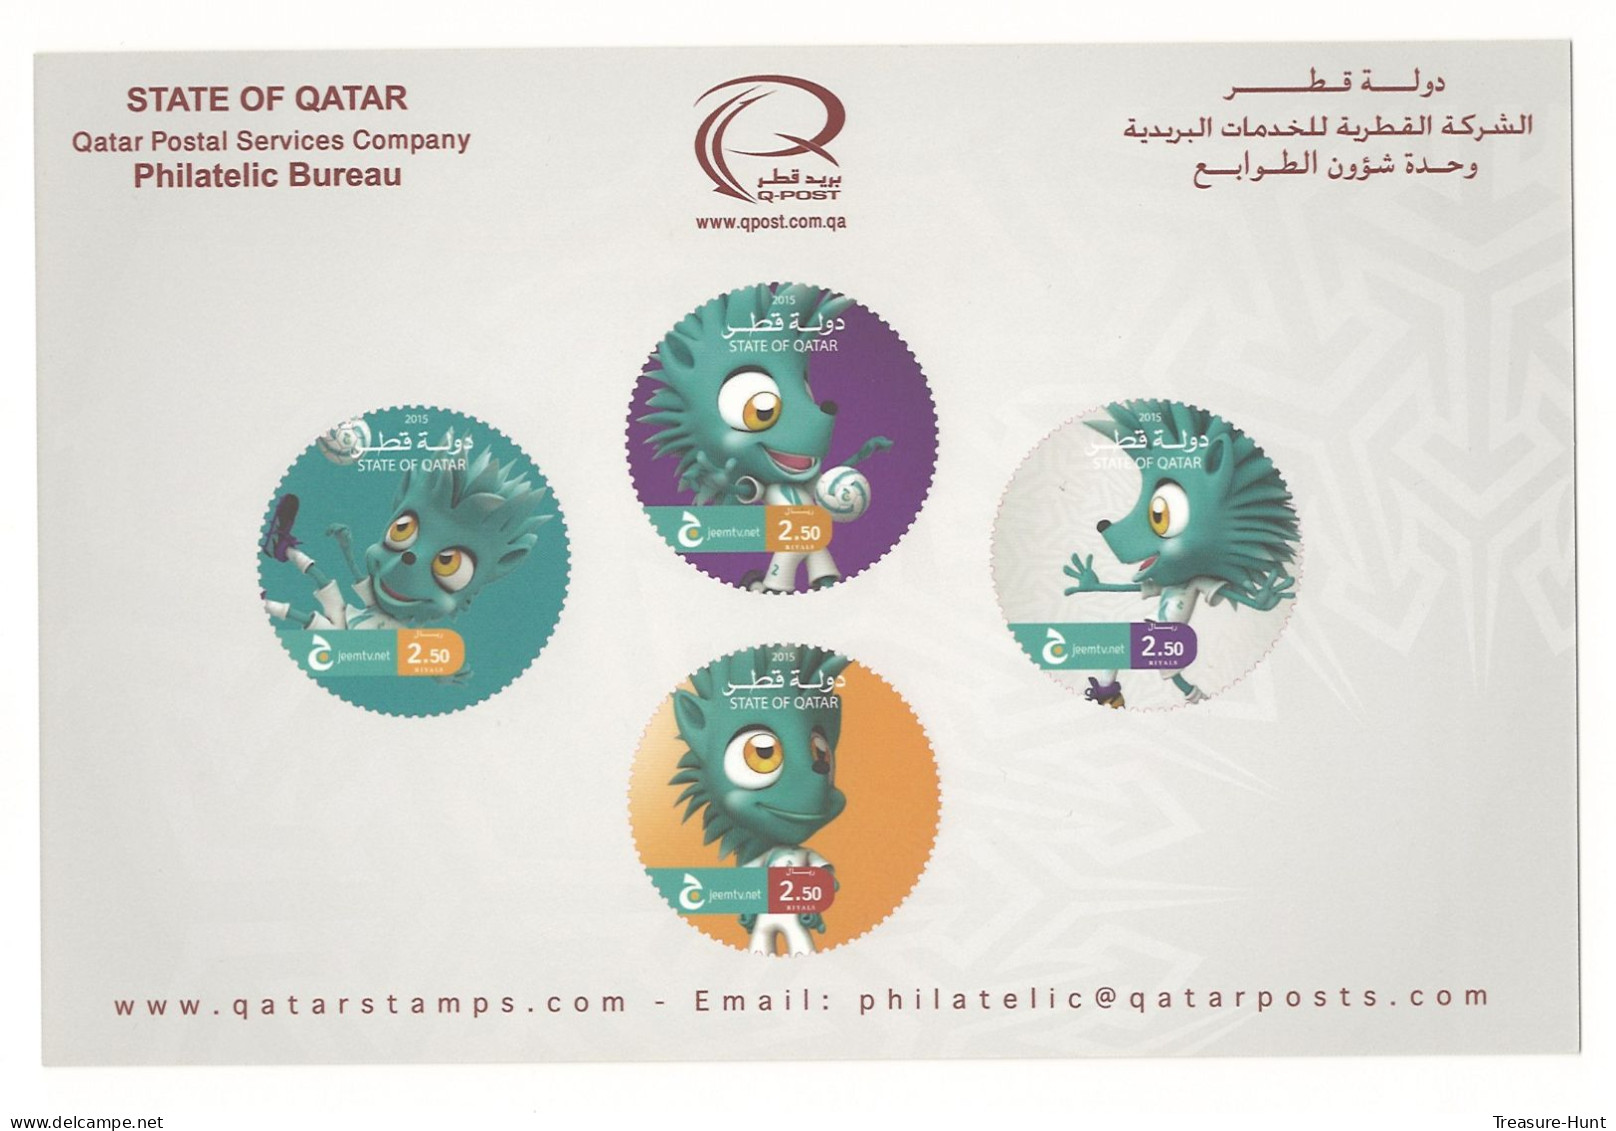 QATAR NEW STAMPS ISSUE BULLETIN / BROCHURE / POSTAL NOTICE - 2015 JEEM TV CHANNEL CUP SOCCER FOOTBALL, MASCOT ODD SHAPE - Qatar